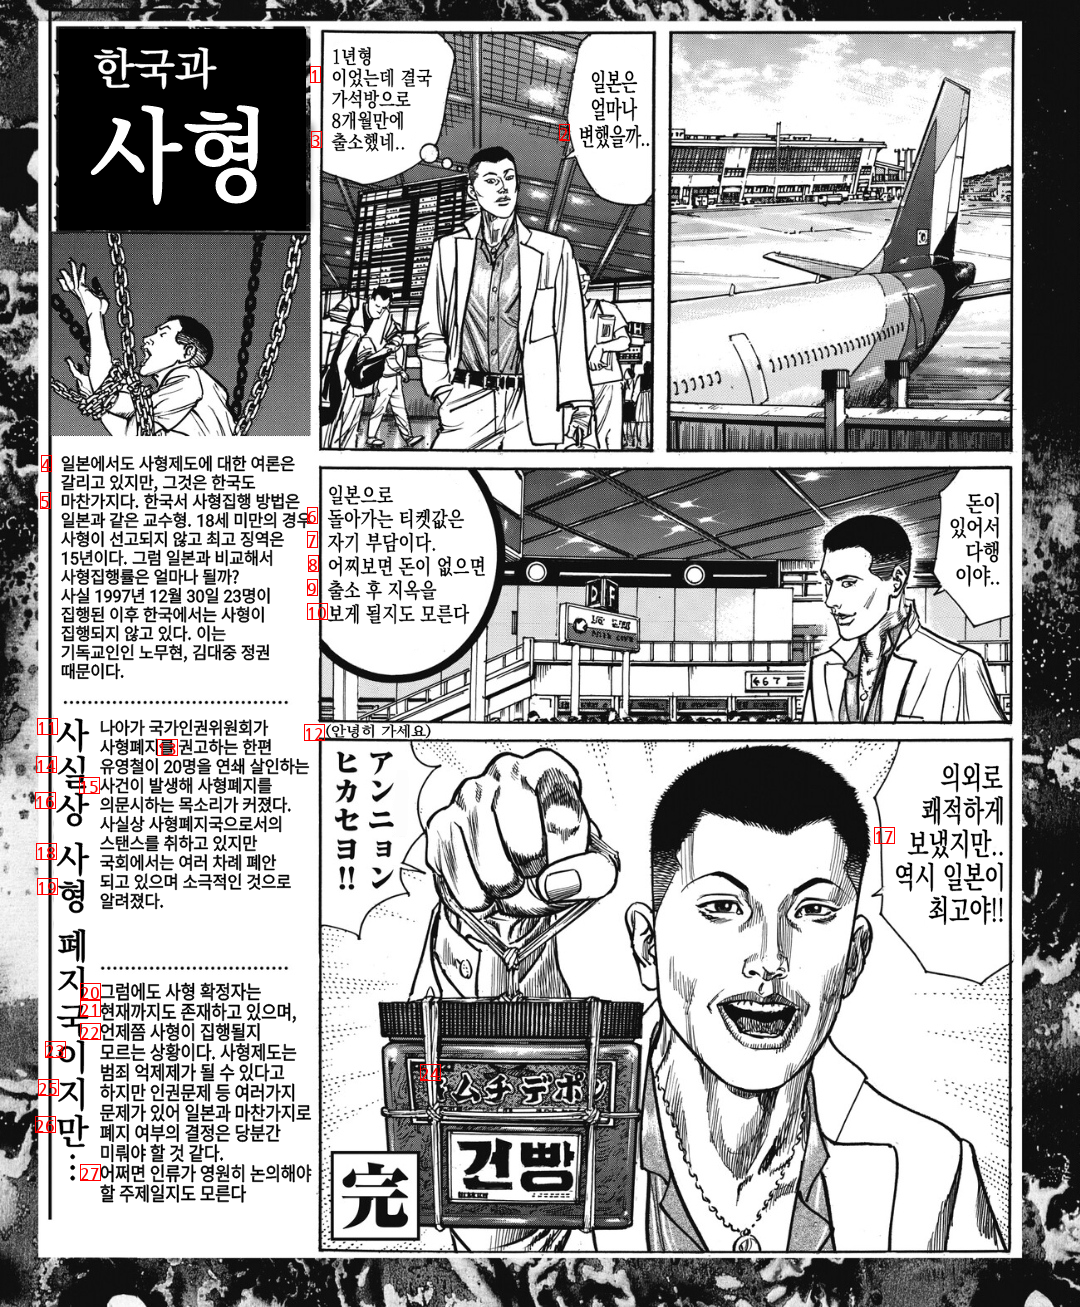 한국 교도소에 수감된 일본인 범죄자 만화.manhwa